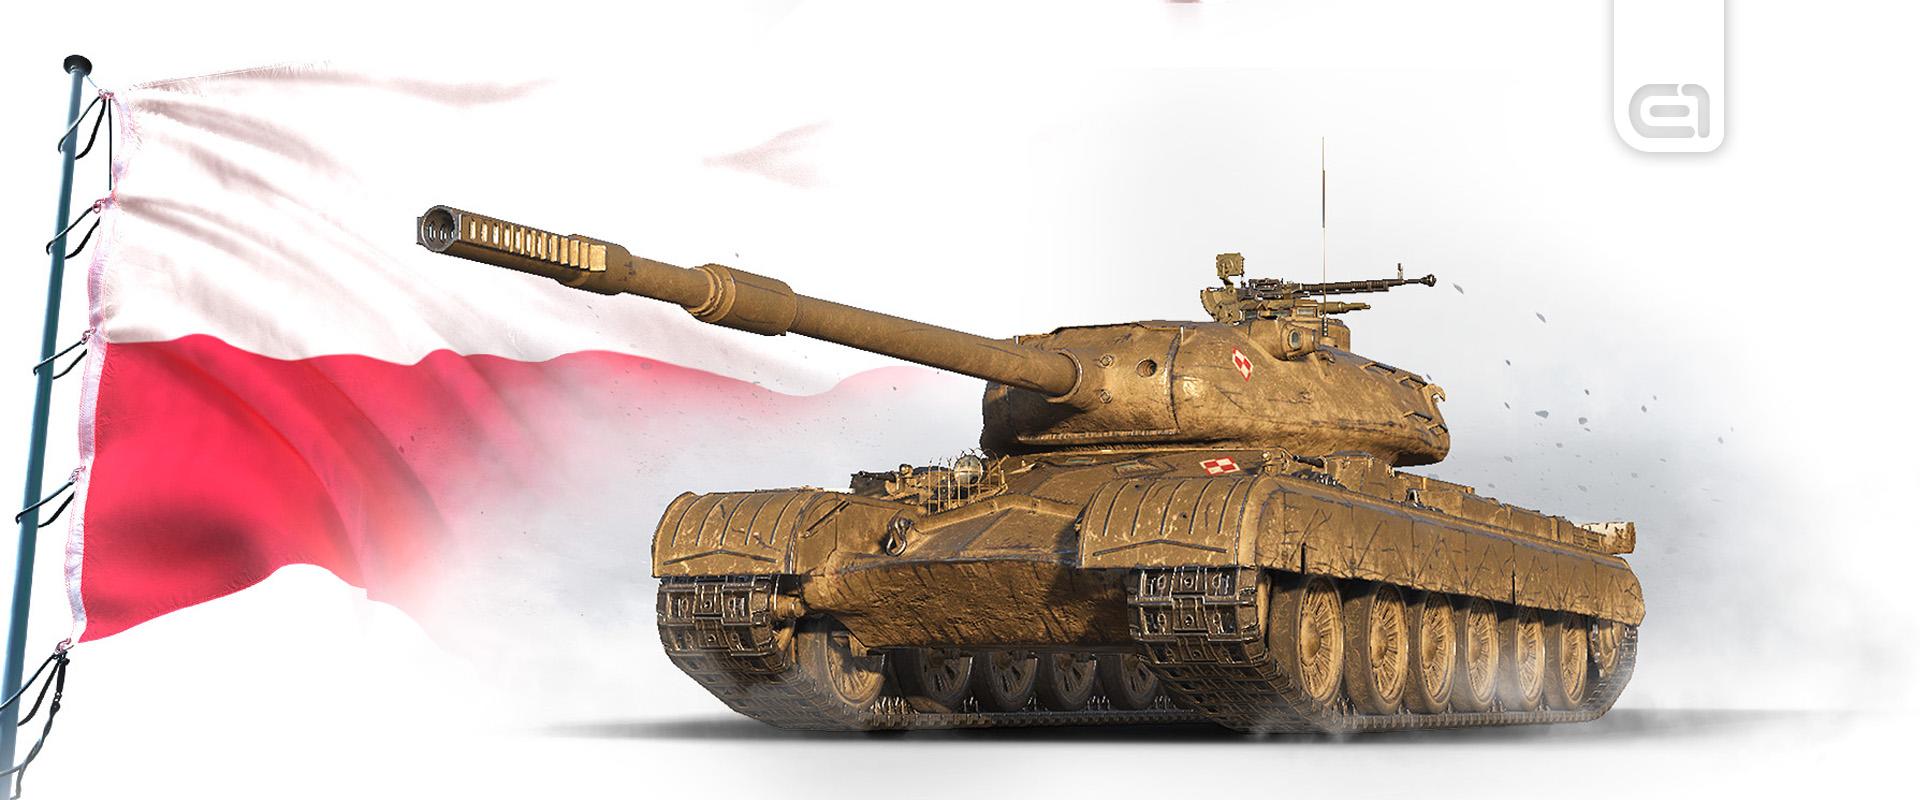 Egy új lengyel prémium nehéz tank tette tiszteletét a szuperteszten